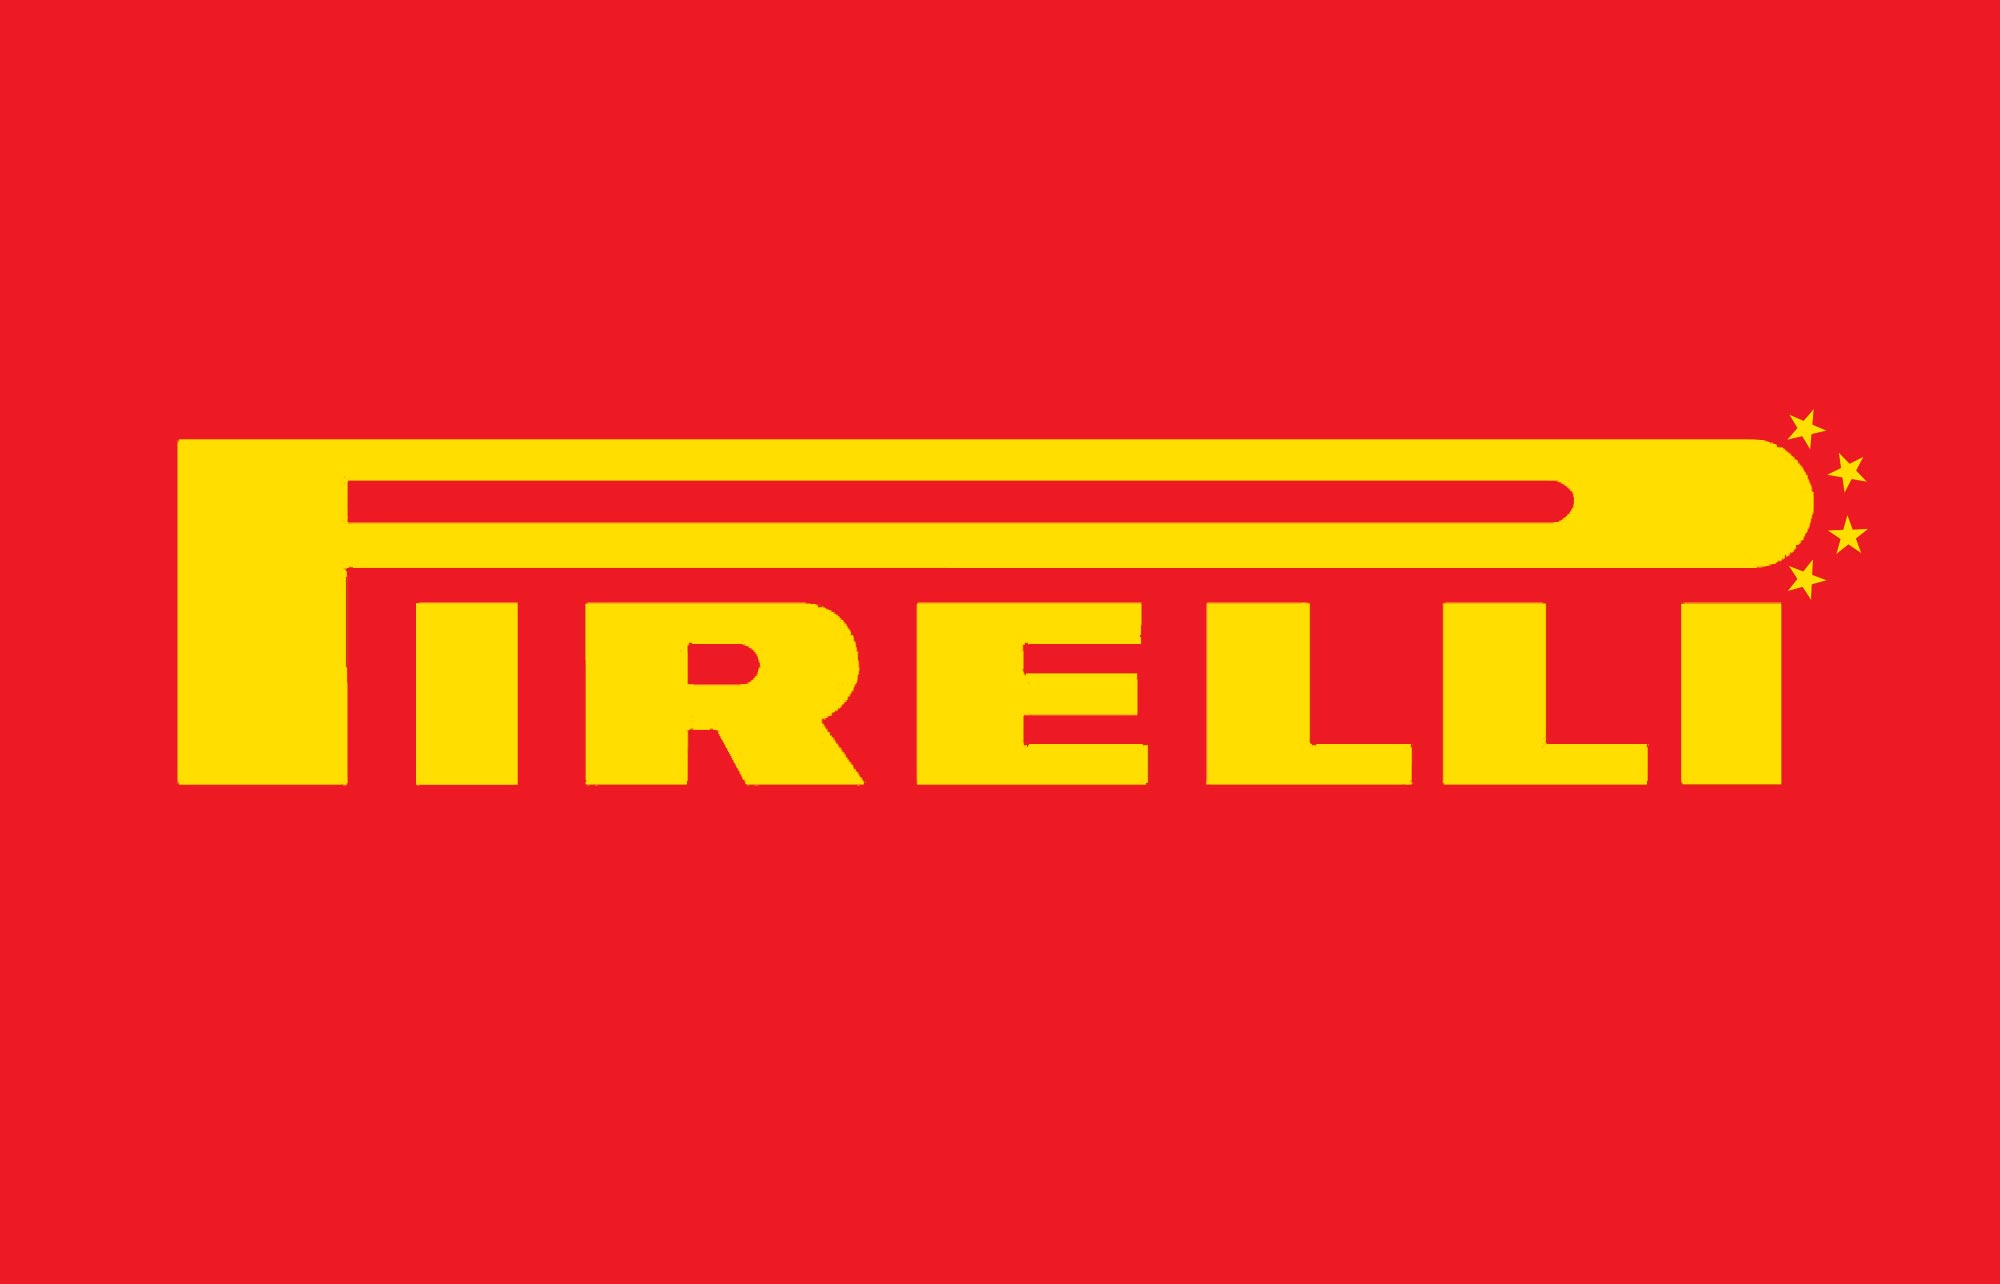 Pirelli Tires